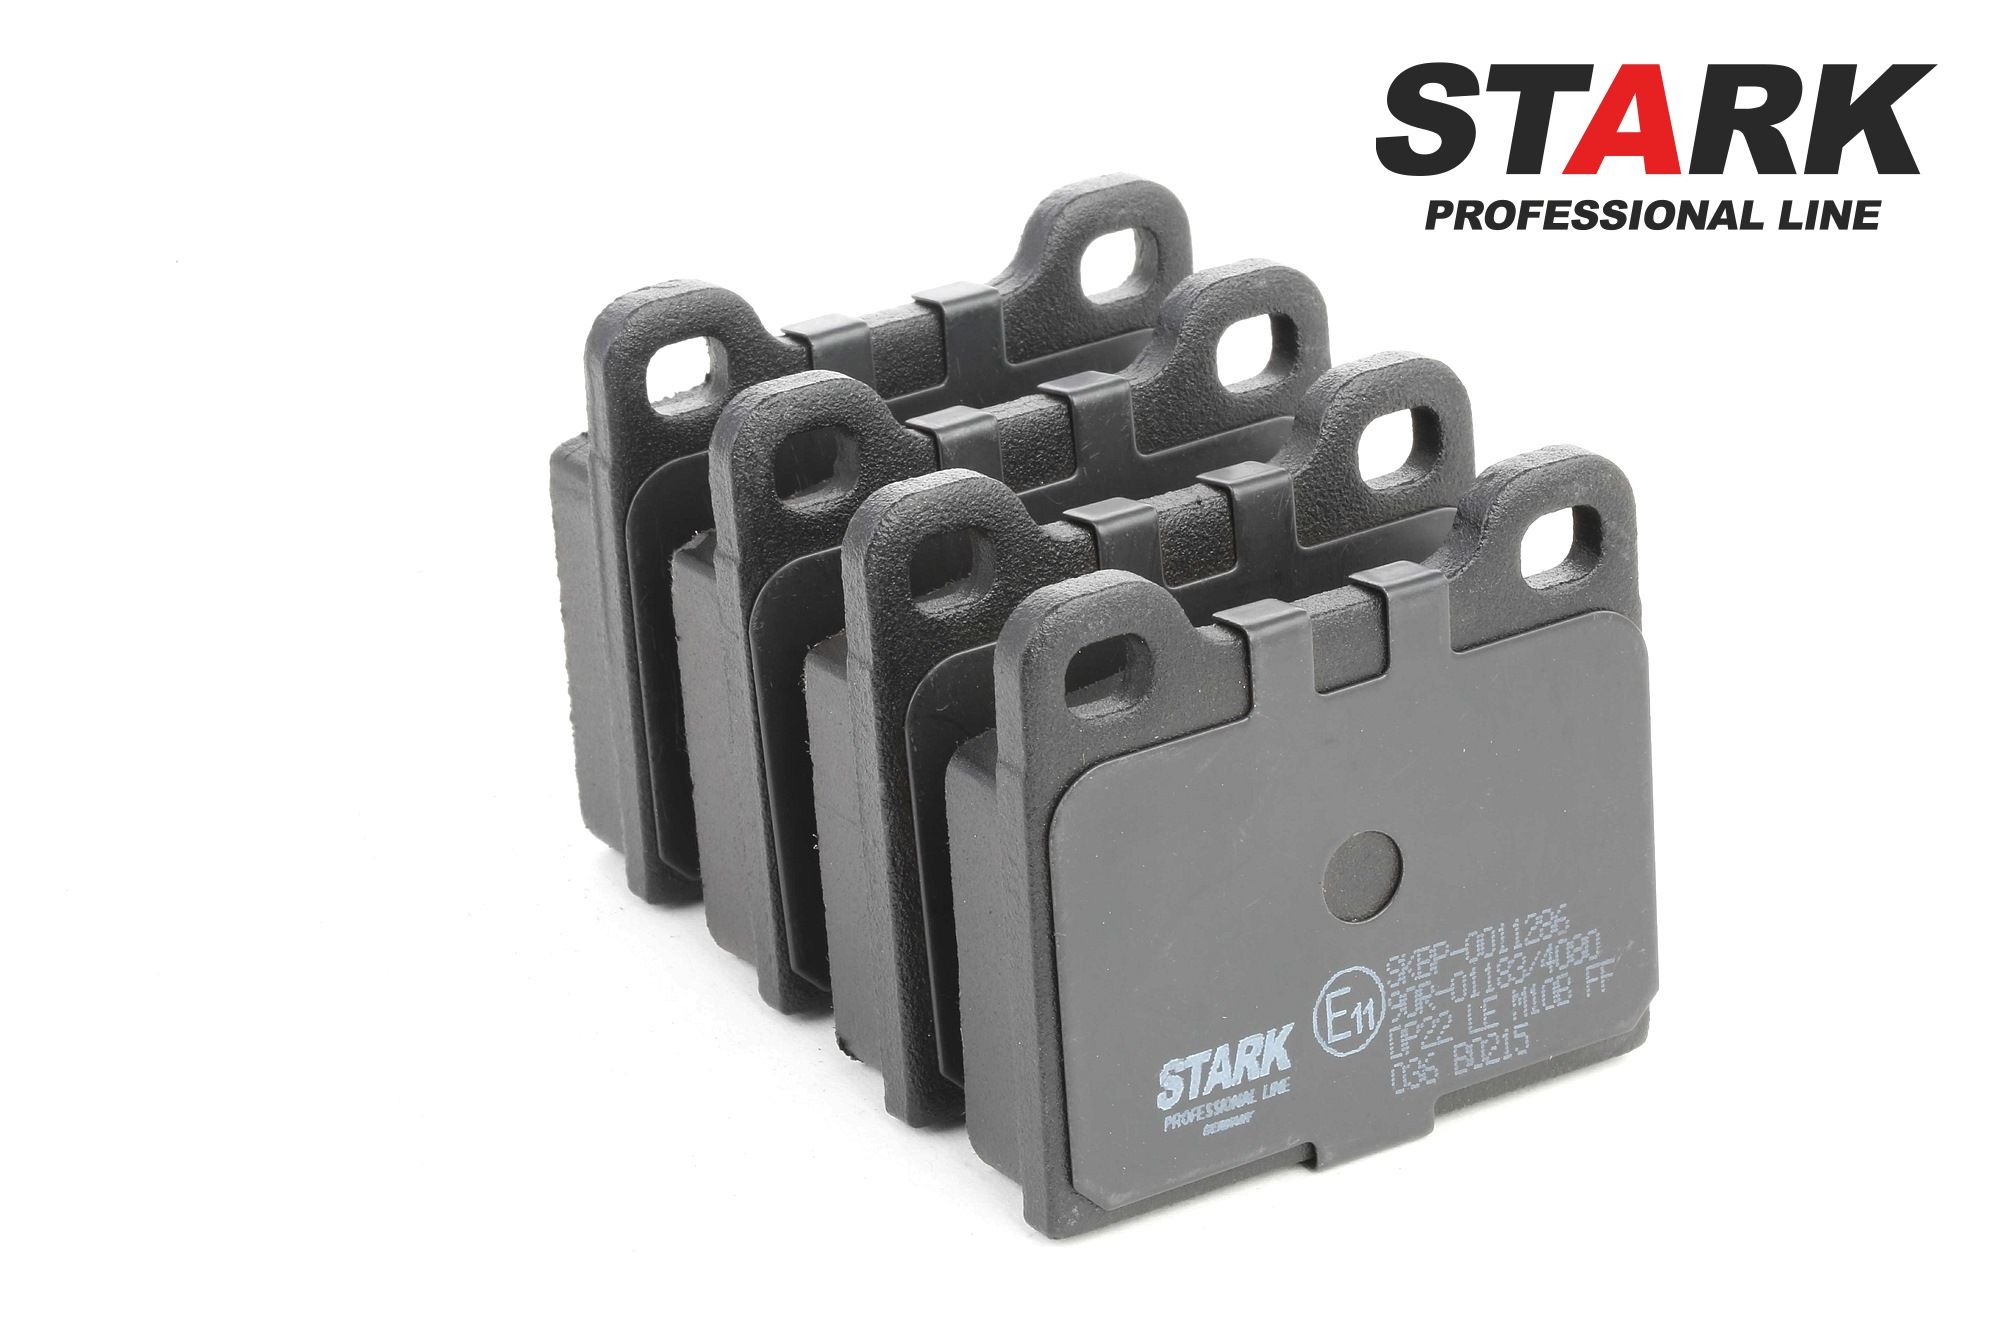 STARK SKBP-0011286 Kit pastiglie freni Assale posteriore, Non predisposto per contatto segnalazione usura, con accessori